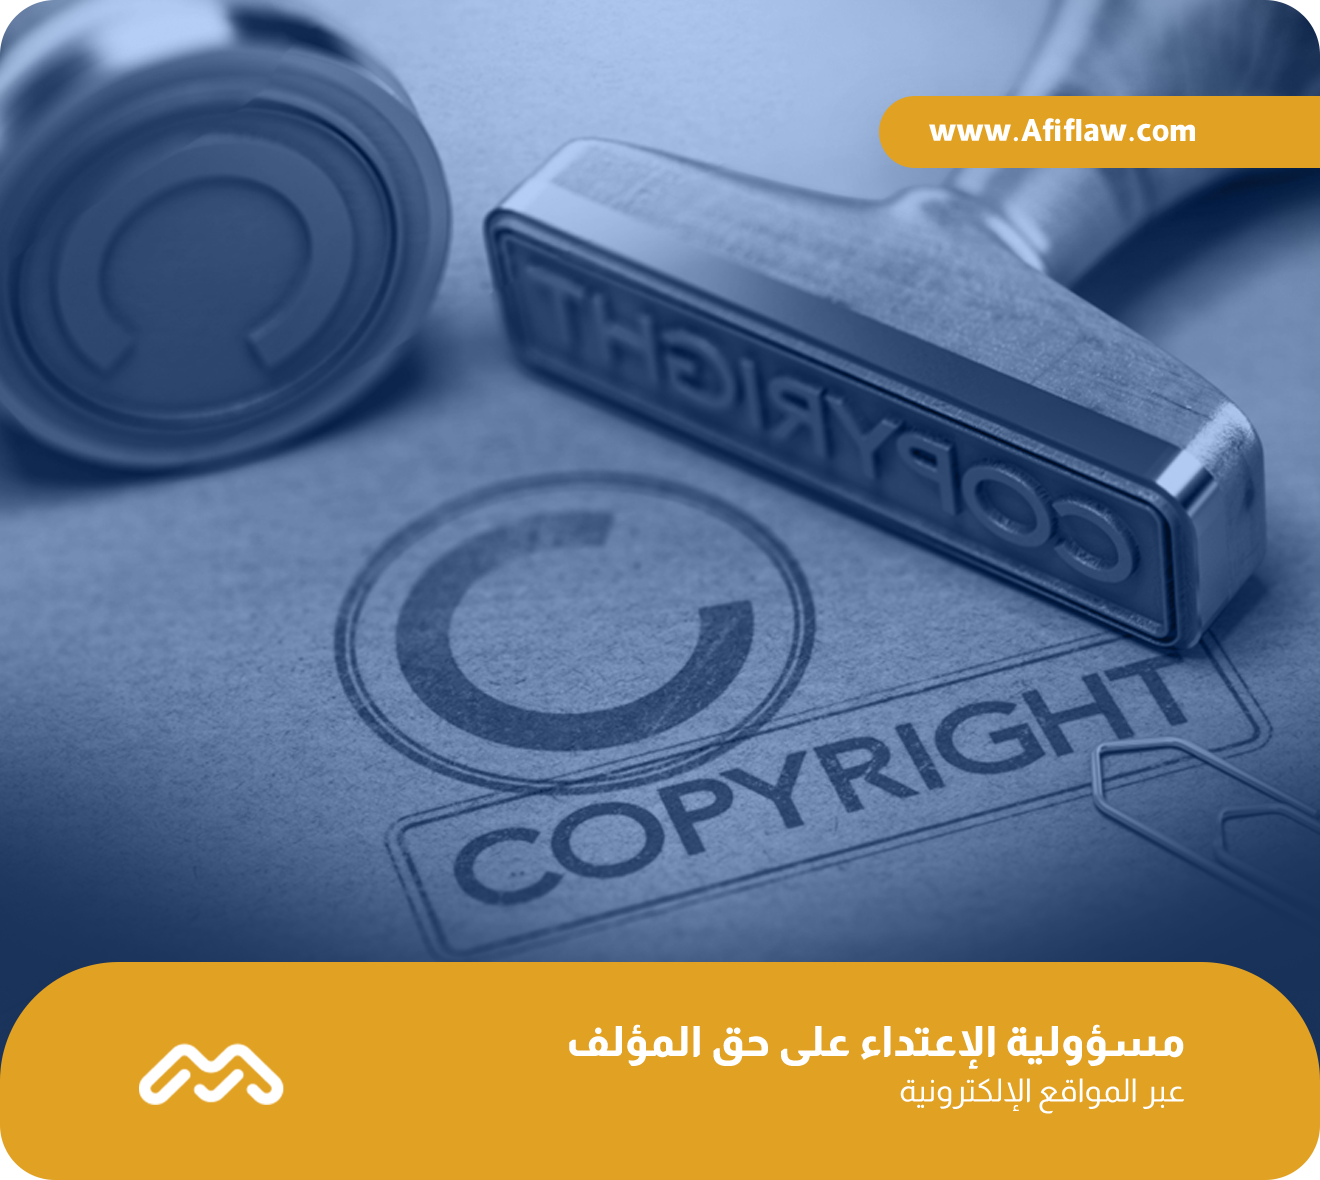 مسؤولية الإعتداء على حق المؤلف عبر المواقع الإلكترونية